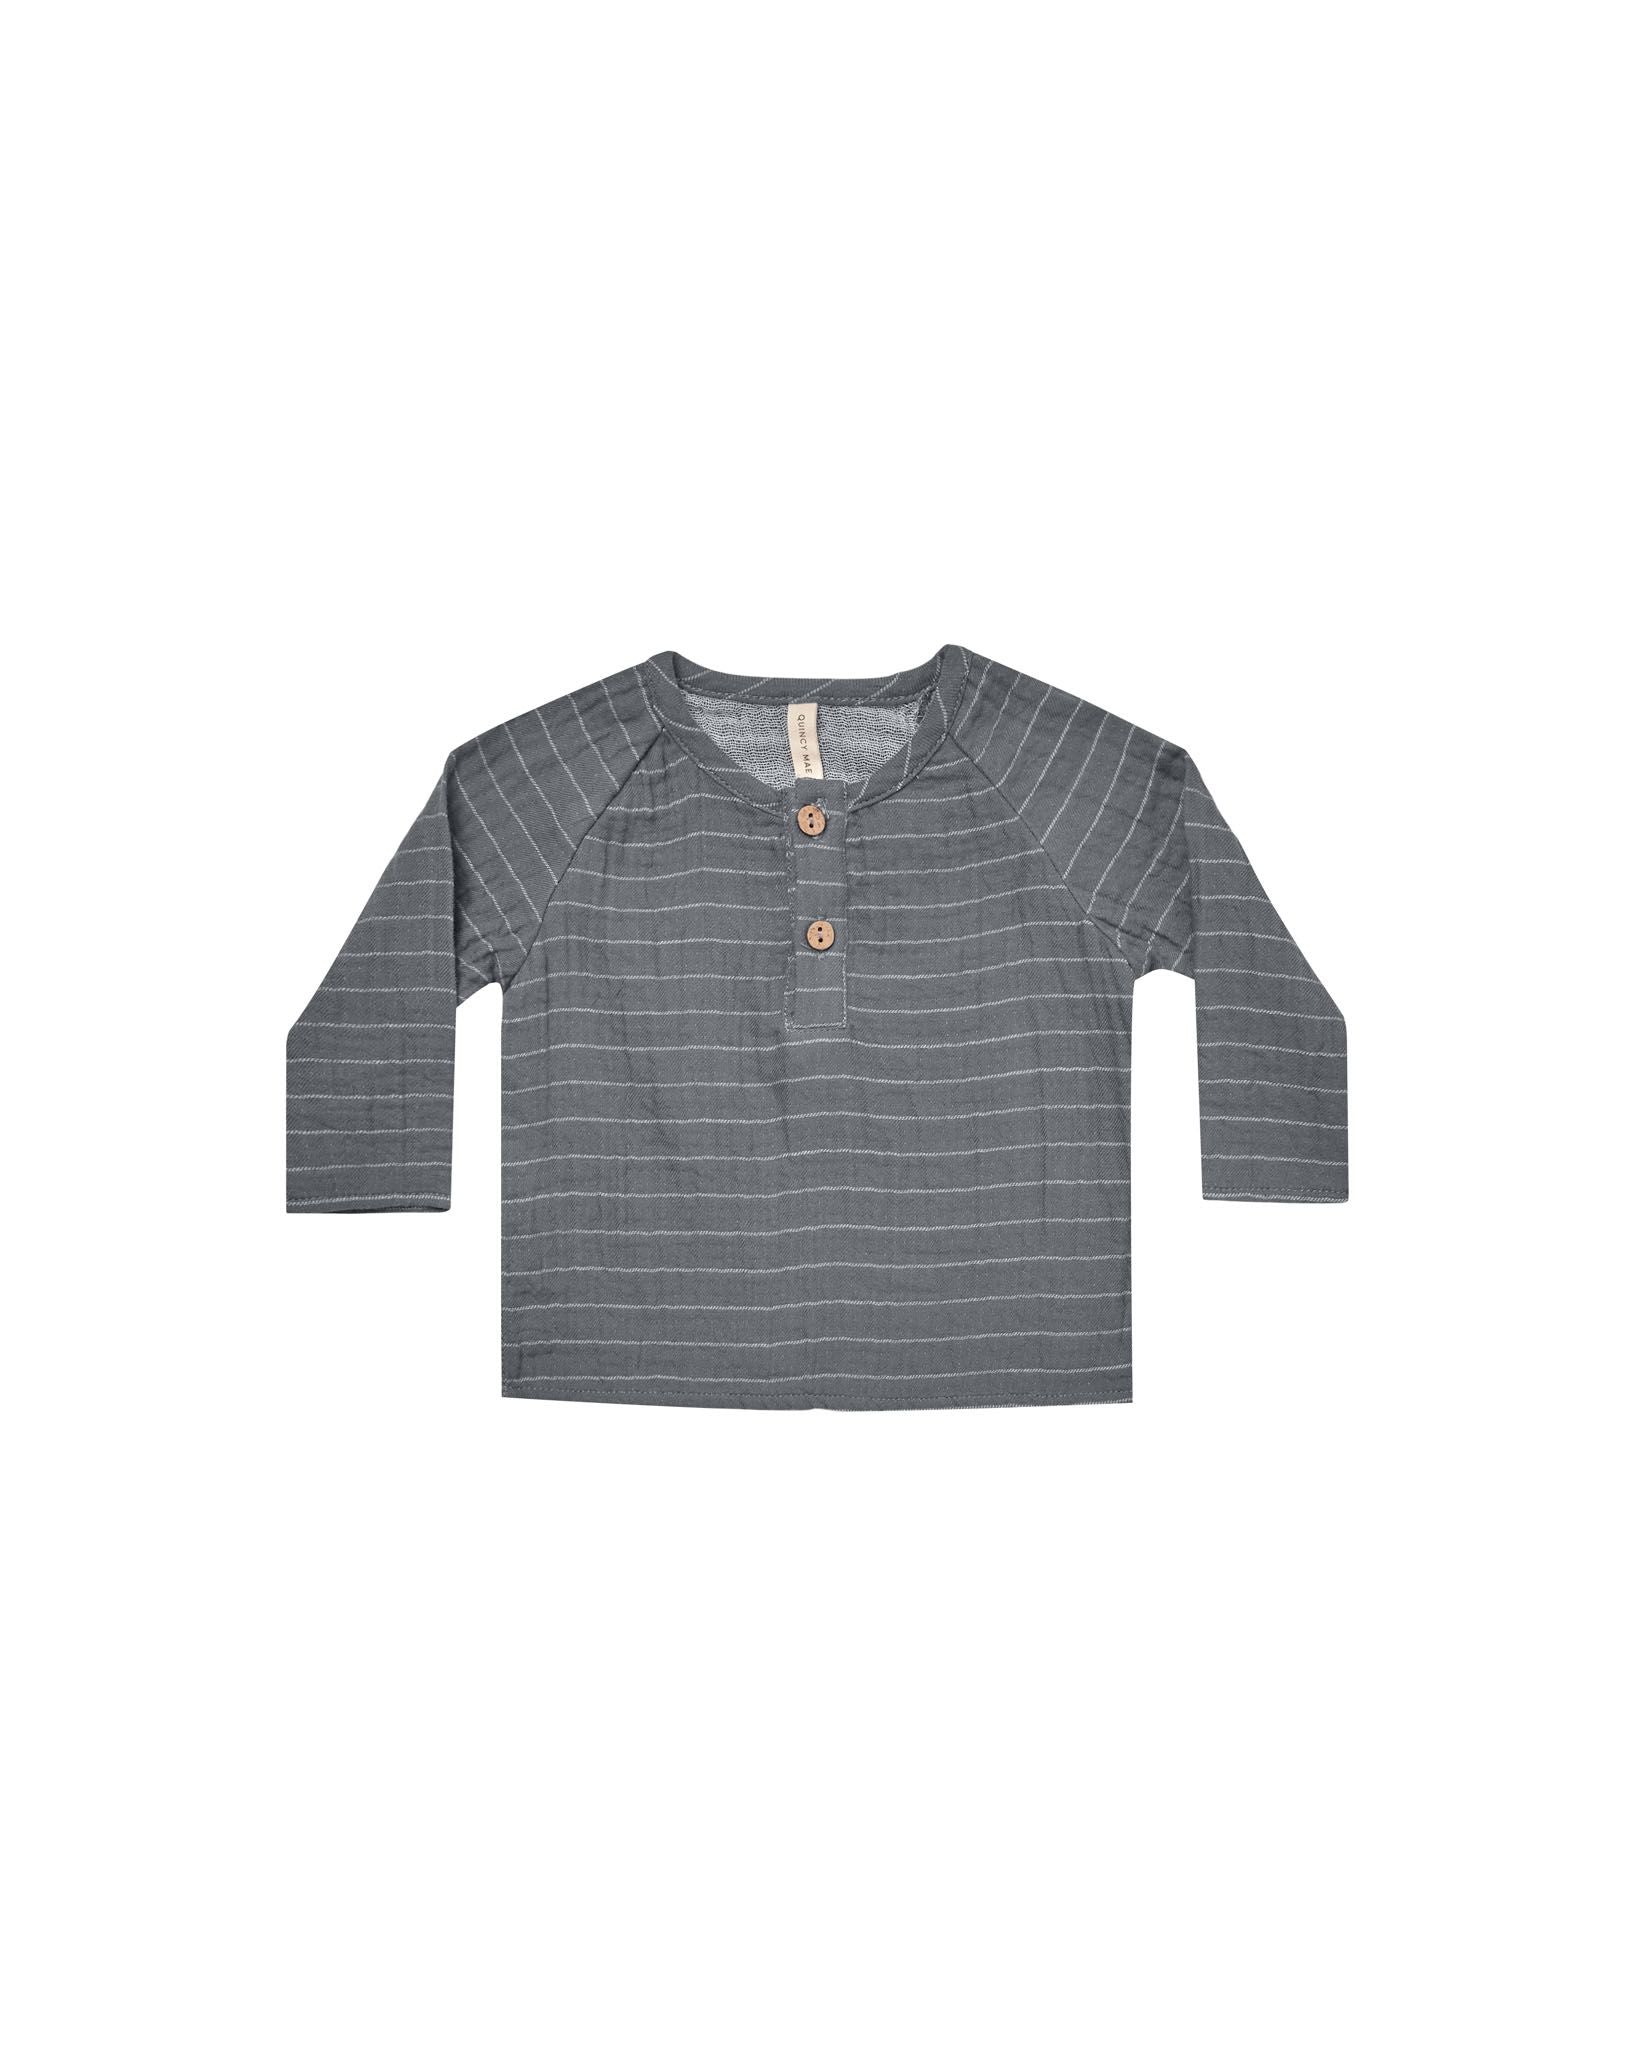 Zion Shirt | Navy Vintage Stripe